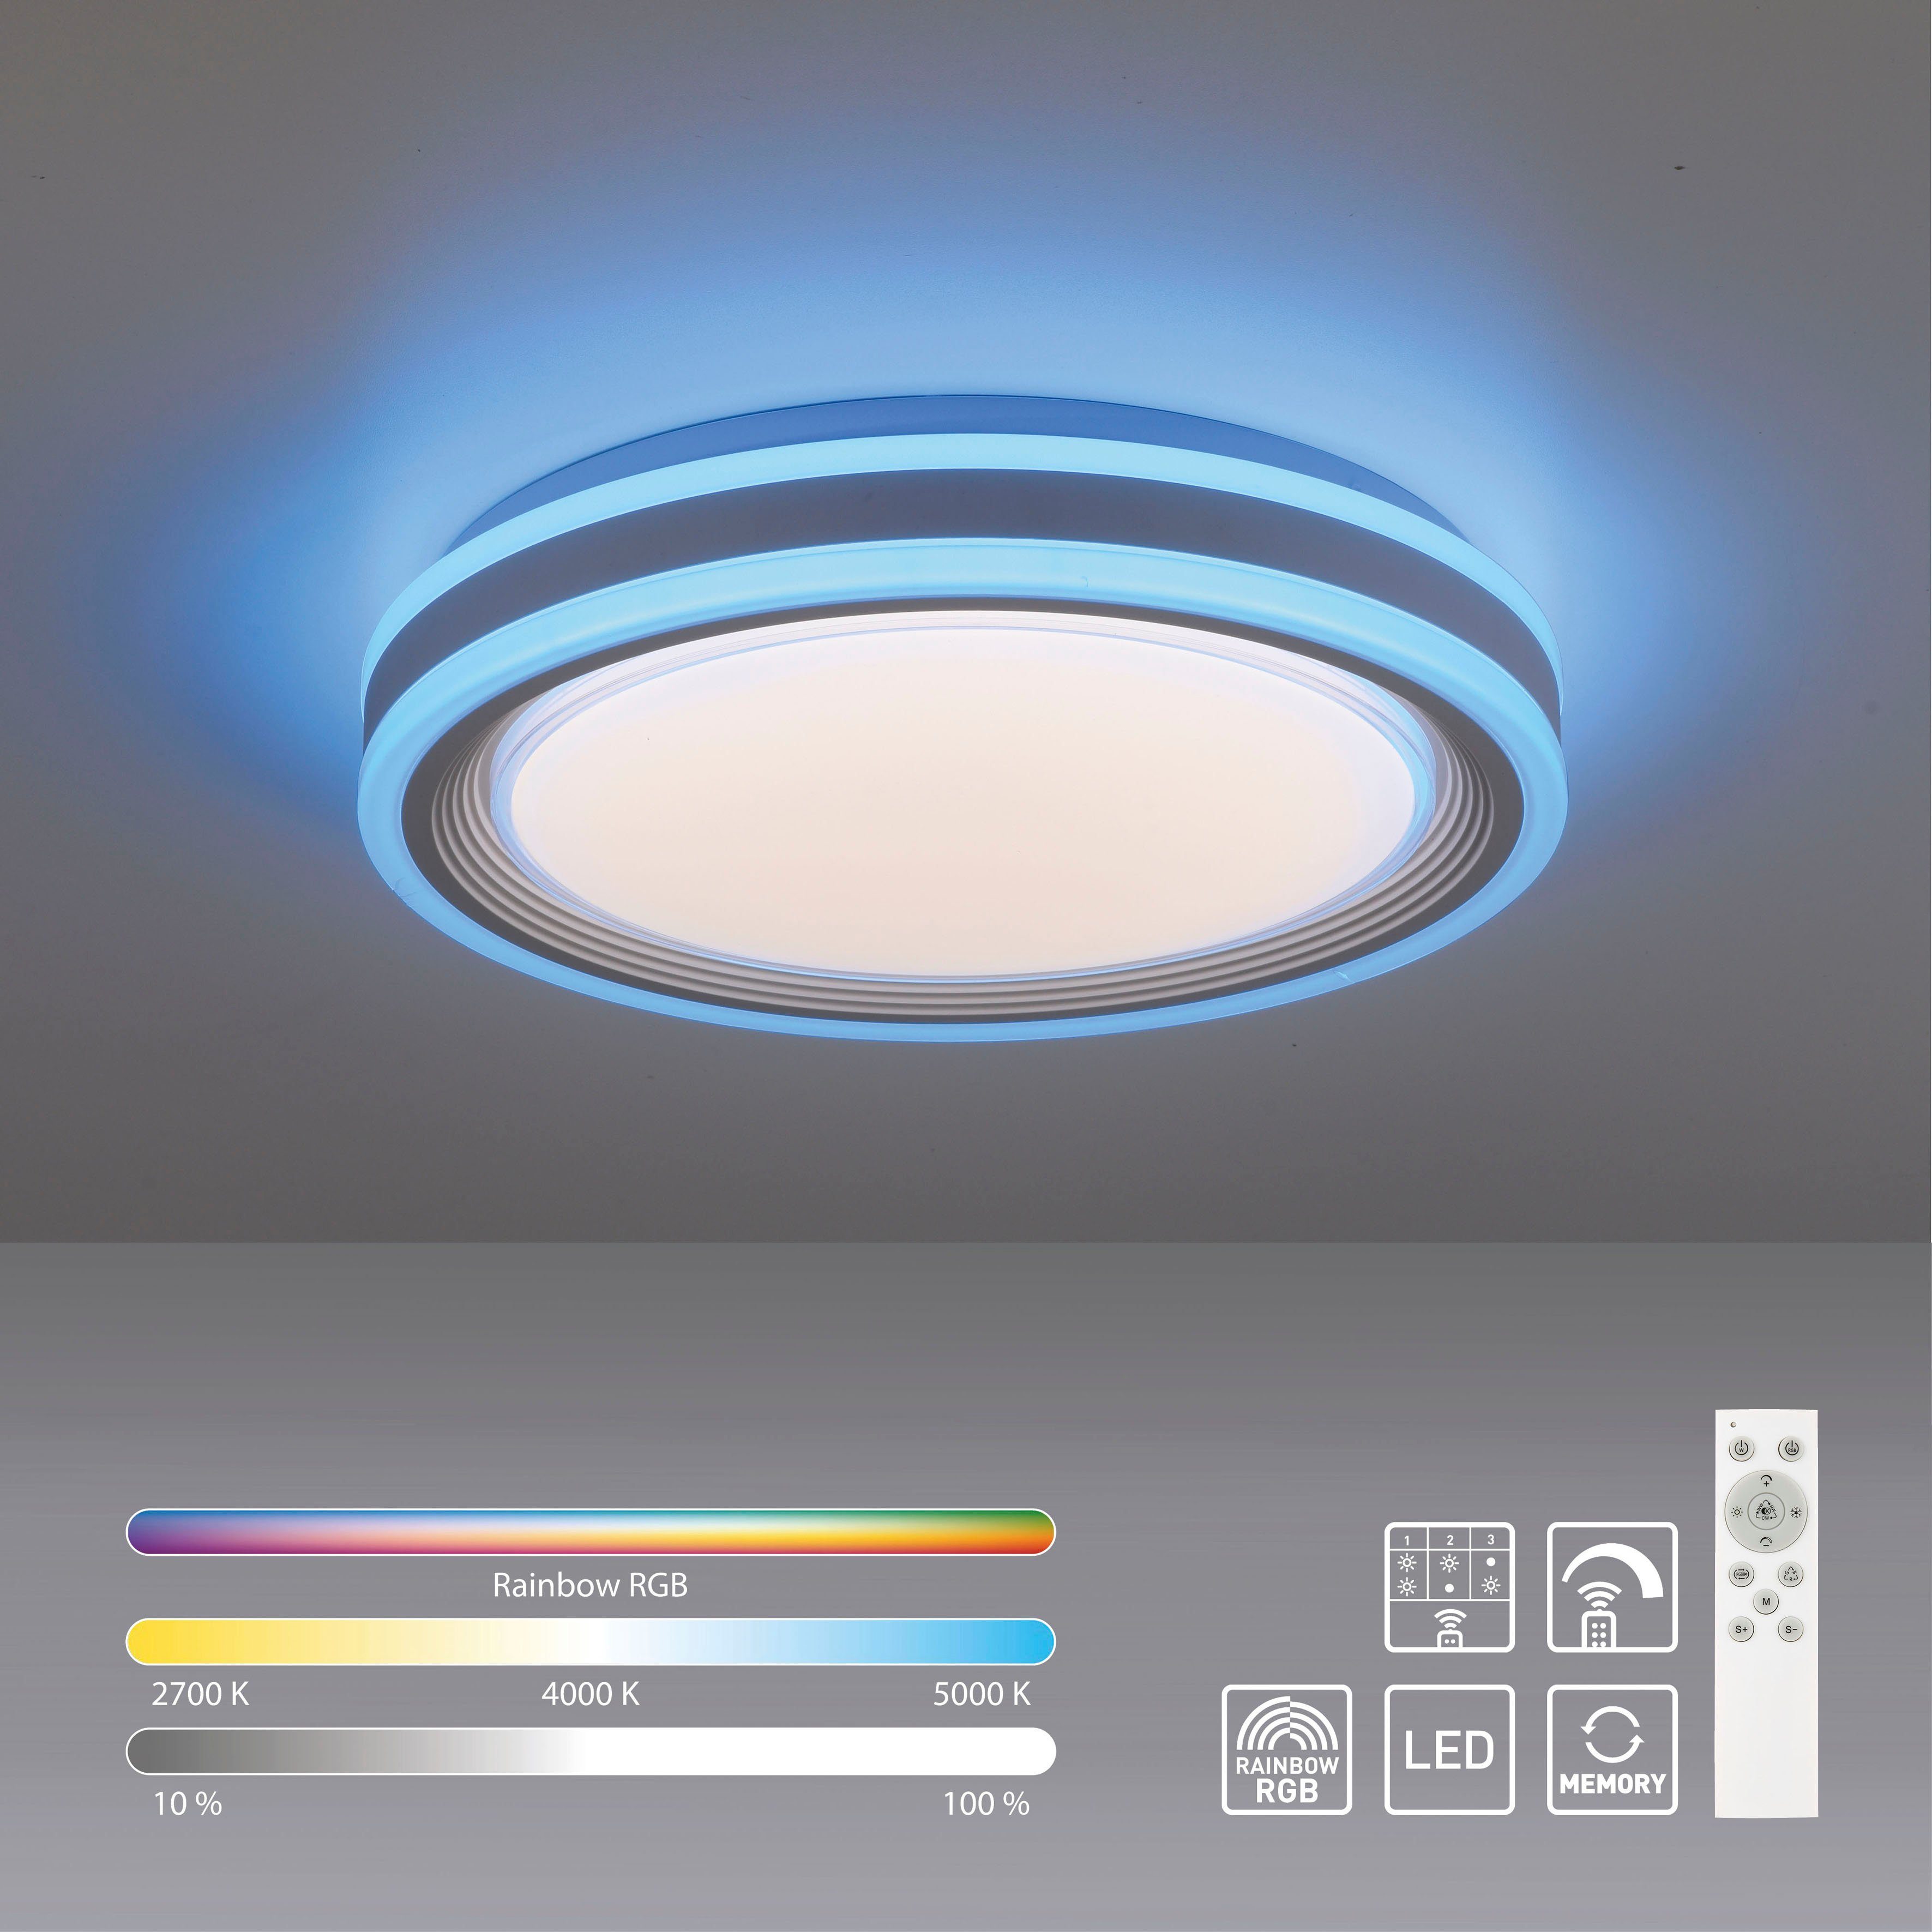 my home Deckenleuchten Danna, CCT über kaltweiß, Dimmfunktion, Deckenlampe - getrennt fest Memoryfunktion, Fernbedienung RGB-Rainbow, integriert, mit über 2700-6000K, warmweiß - Fernbedienung, dimmbar RGB, Farbwechsel, Dimmer, Infrarot Fernbedienung, inkl., schaltbar, LED Fernbedienung, Farbsteuerung, CCT